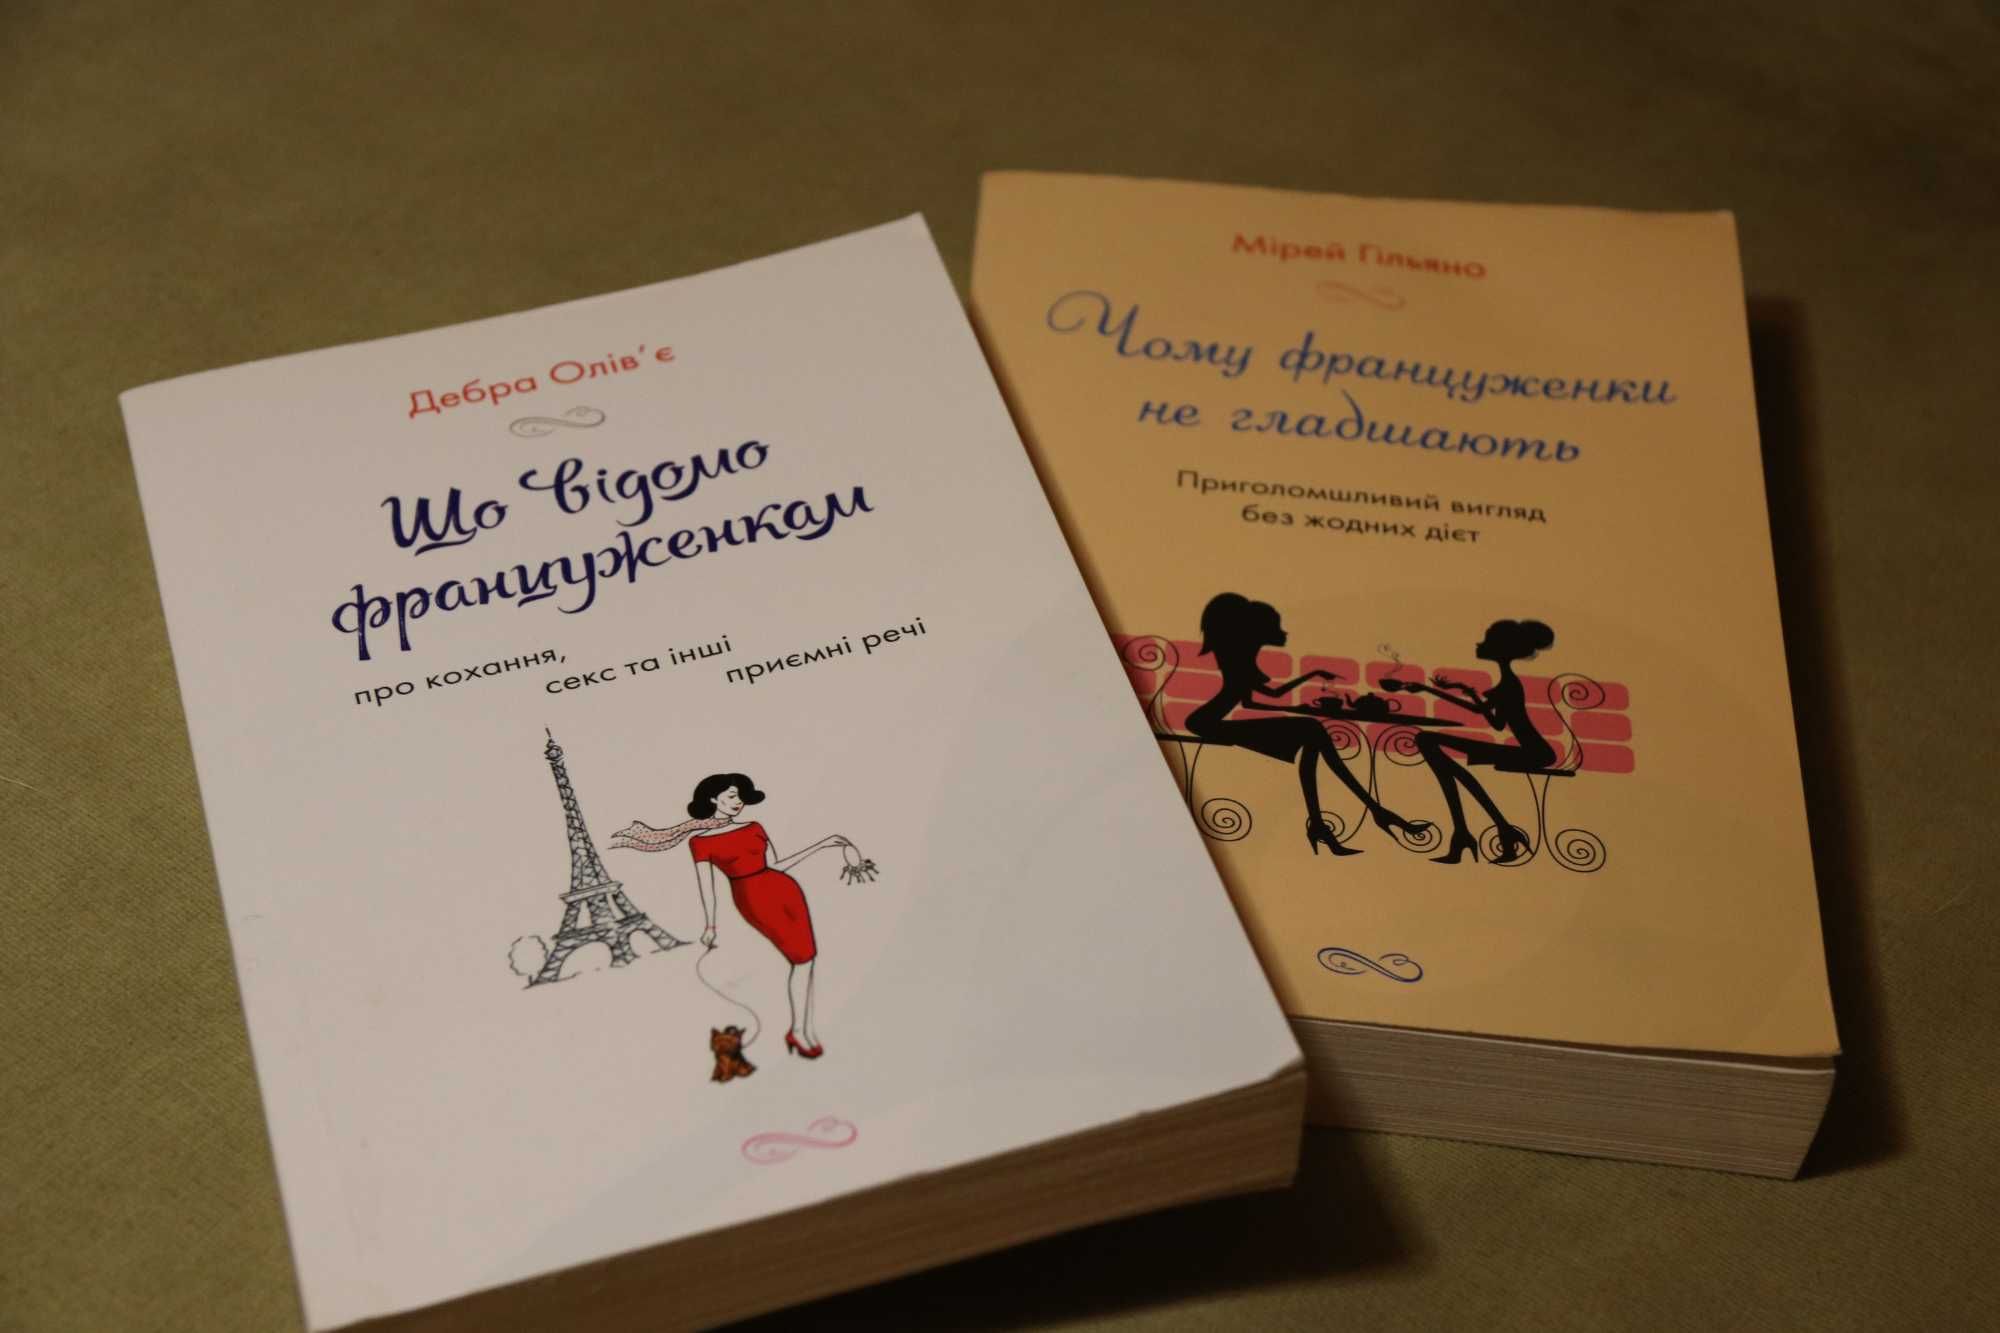 Книга "Чому француженки не гладшають" від Мірей Гільяно